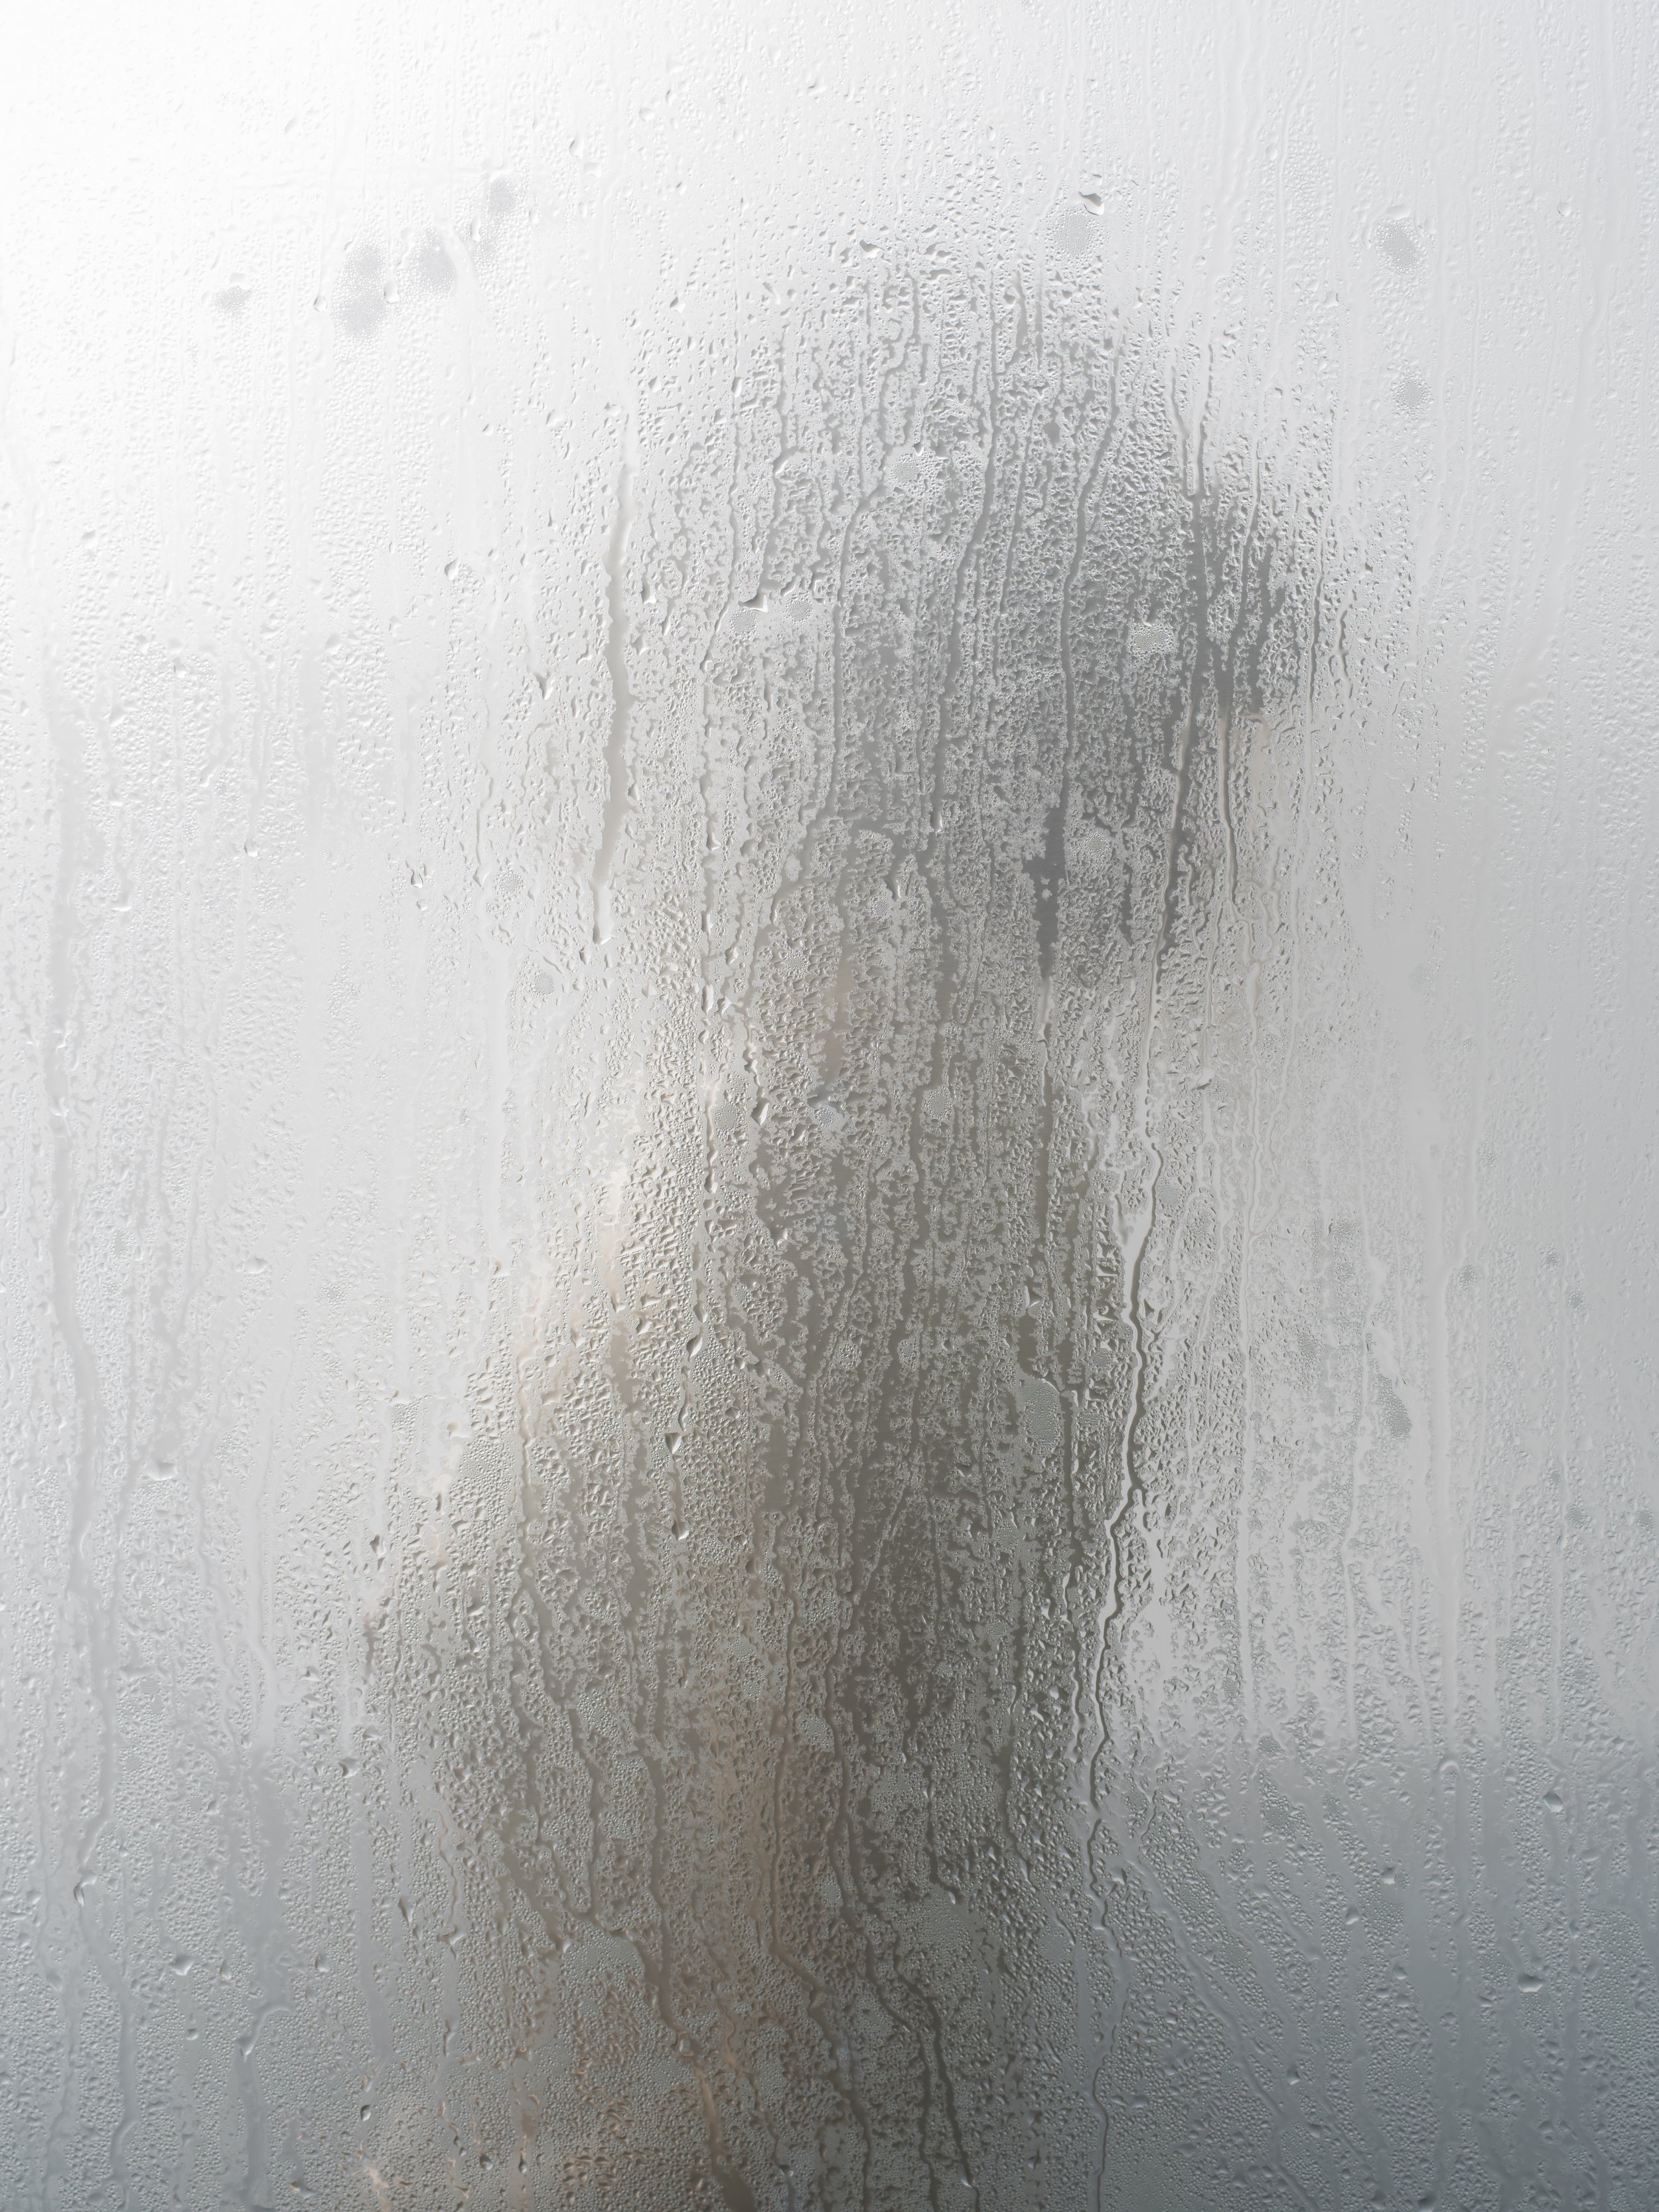 Self portrait in shower